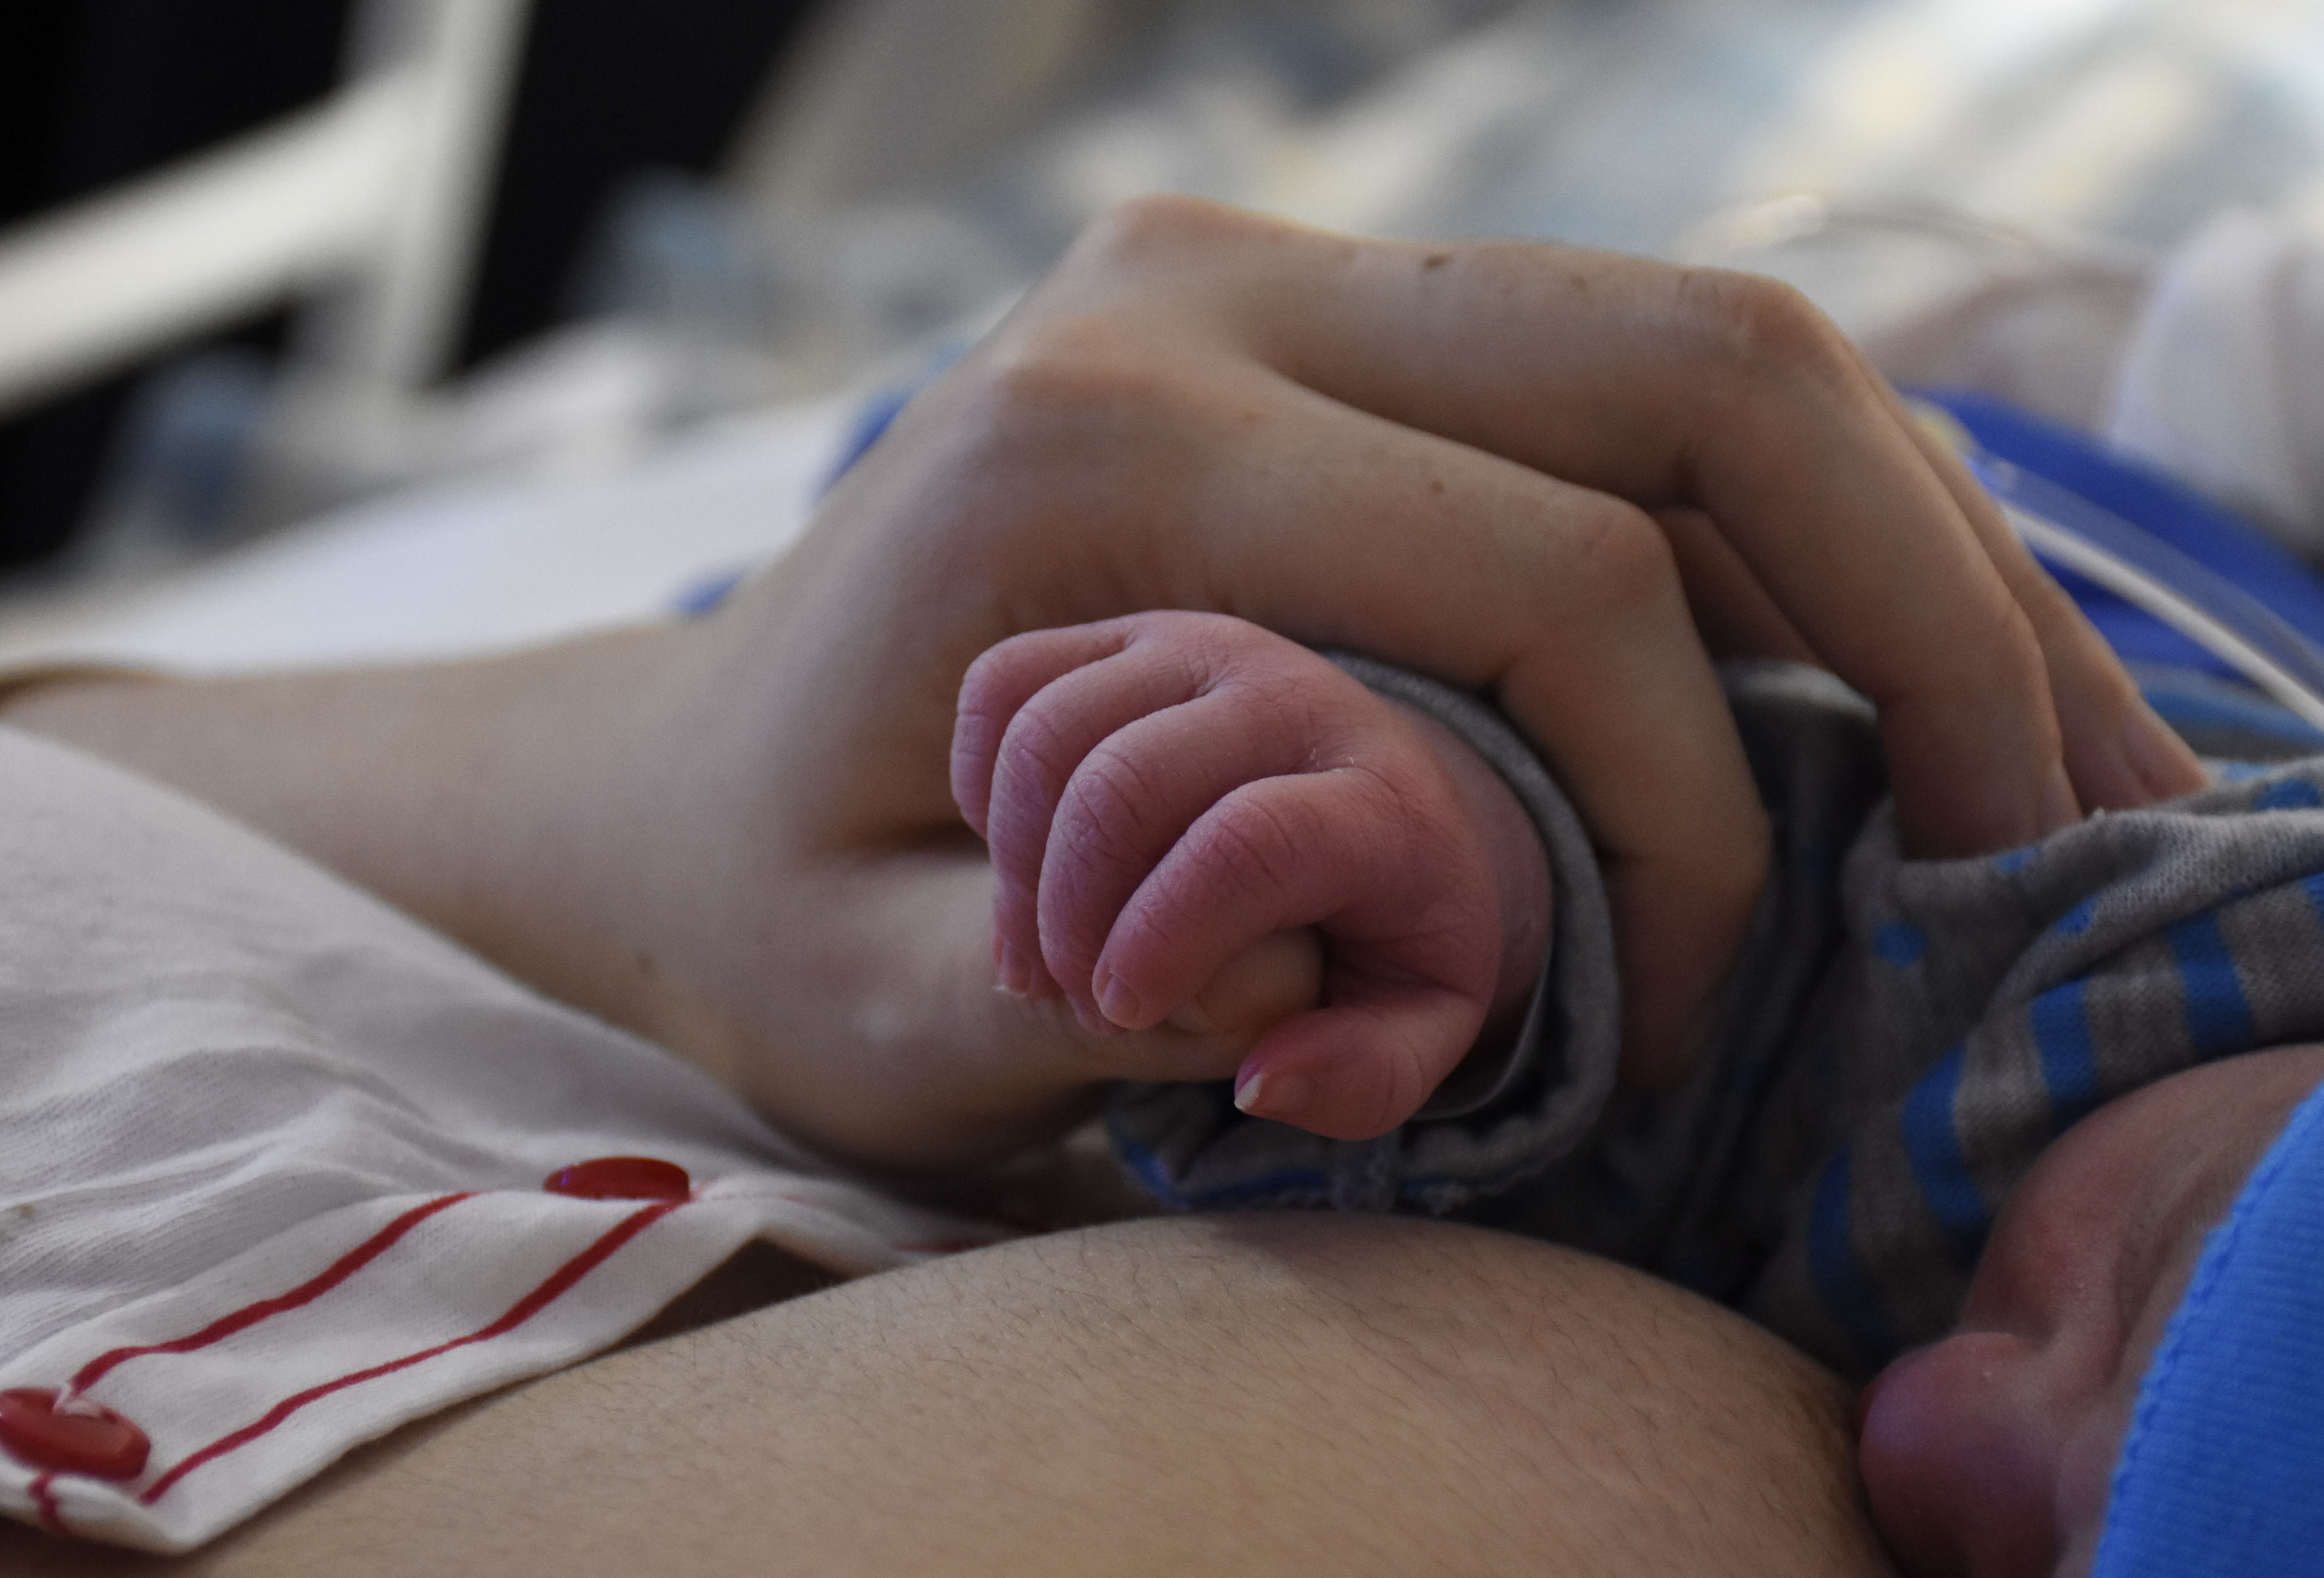 En el sistema público de salud de la provincia se promueve el parto espontáneo. La cesárea se practica sólo cuando es necesaria. Foto Florencia Salto.